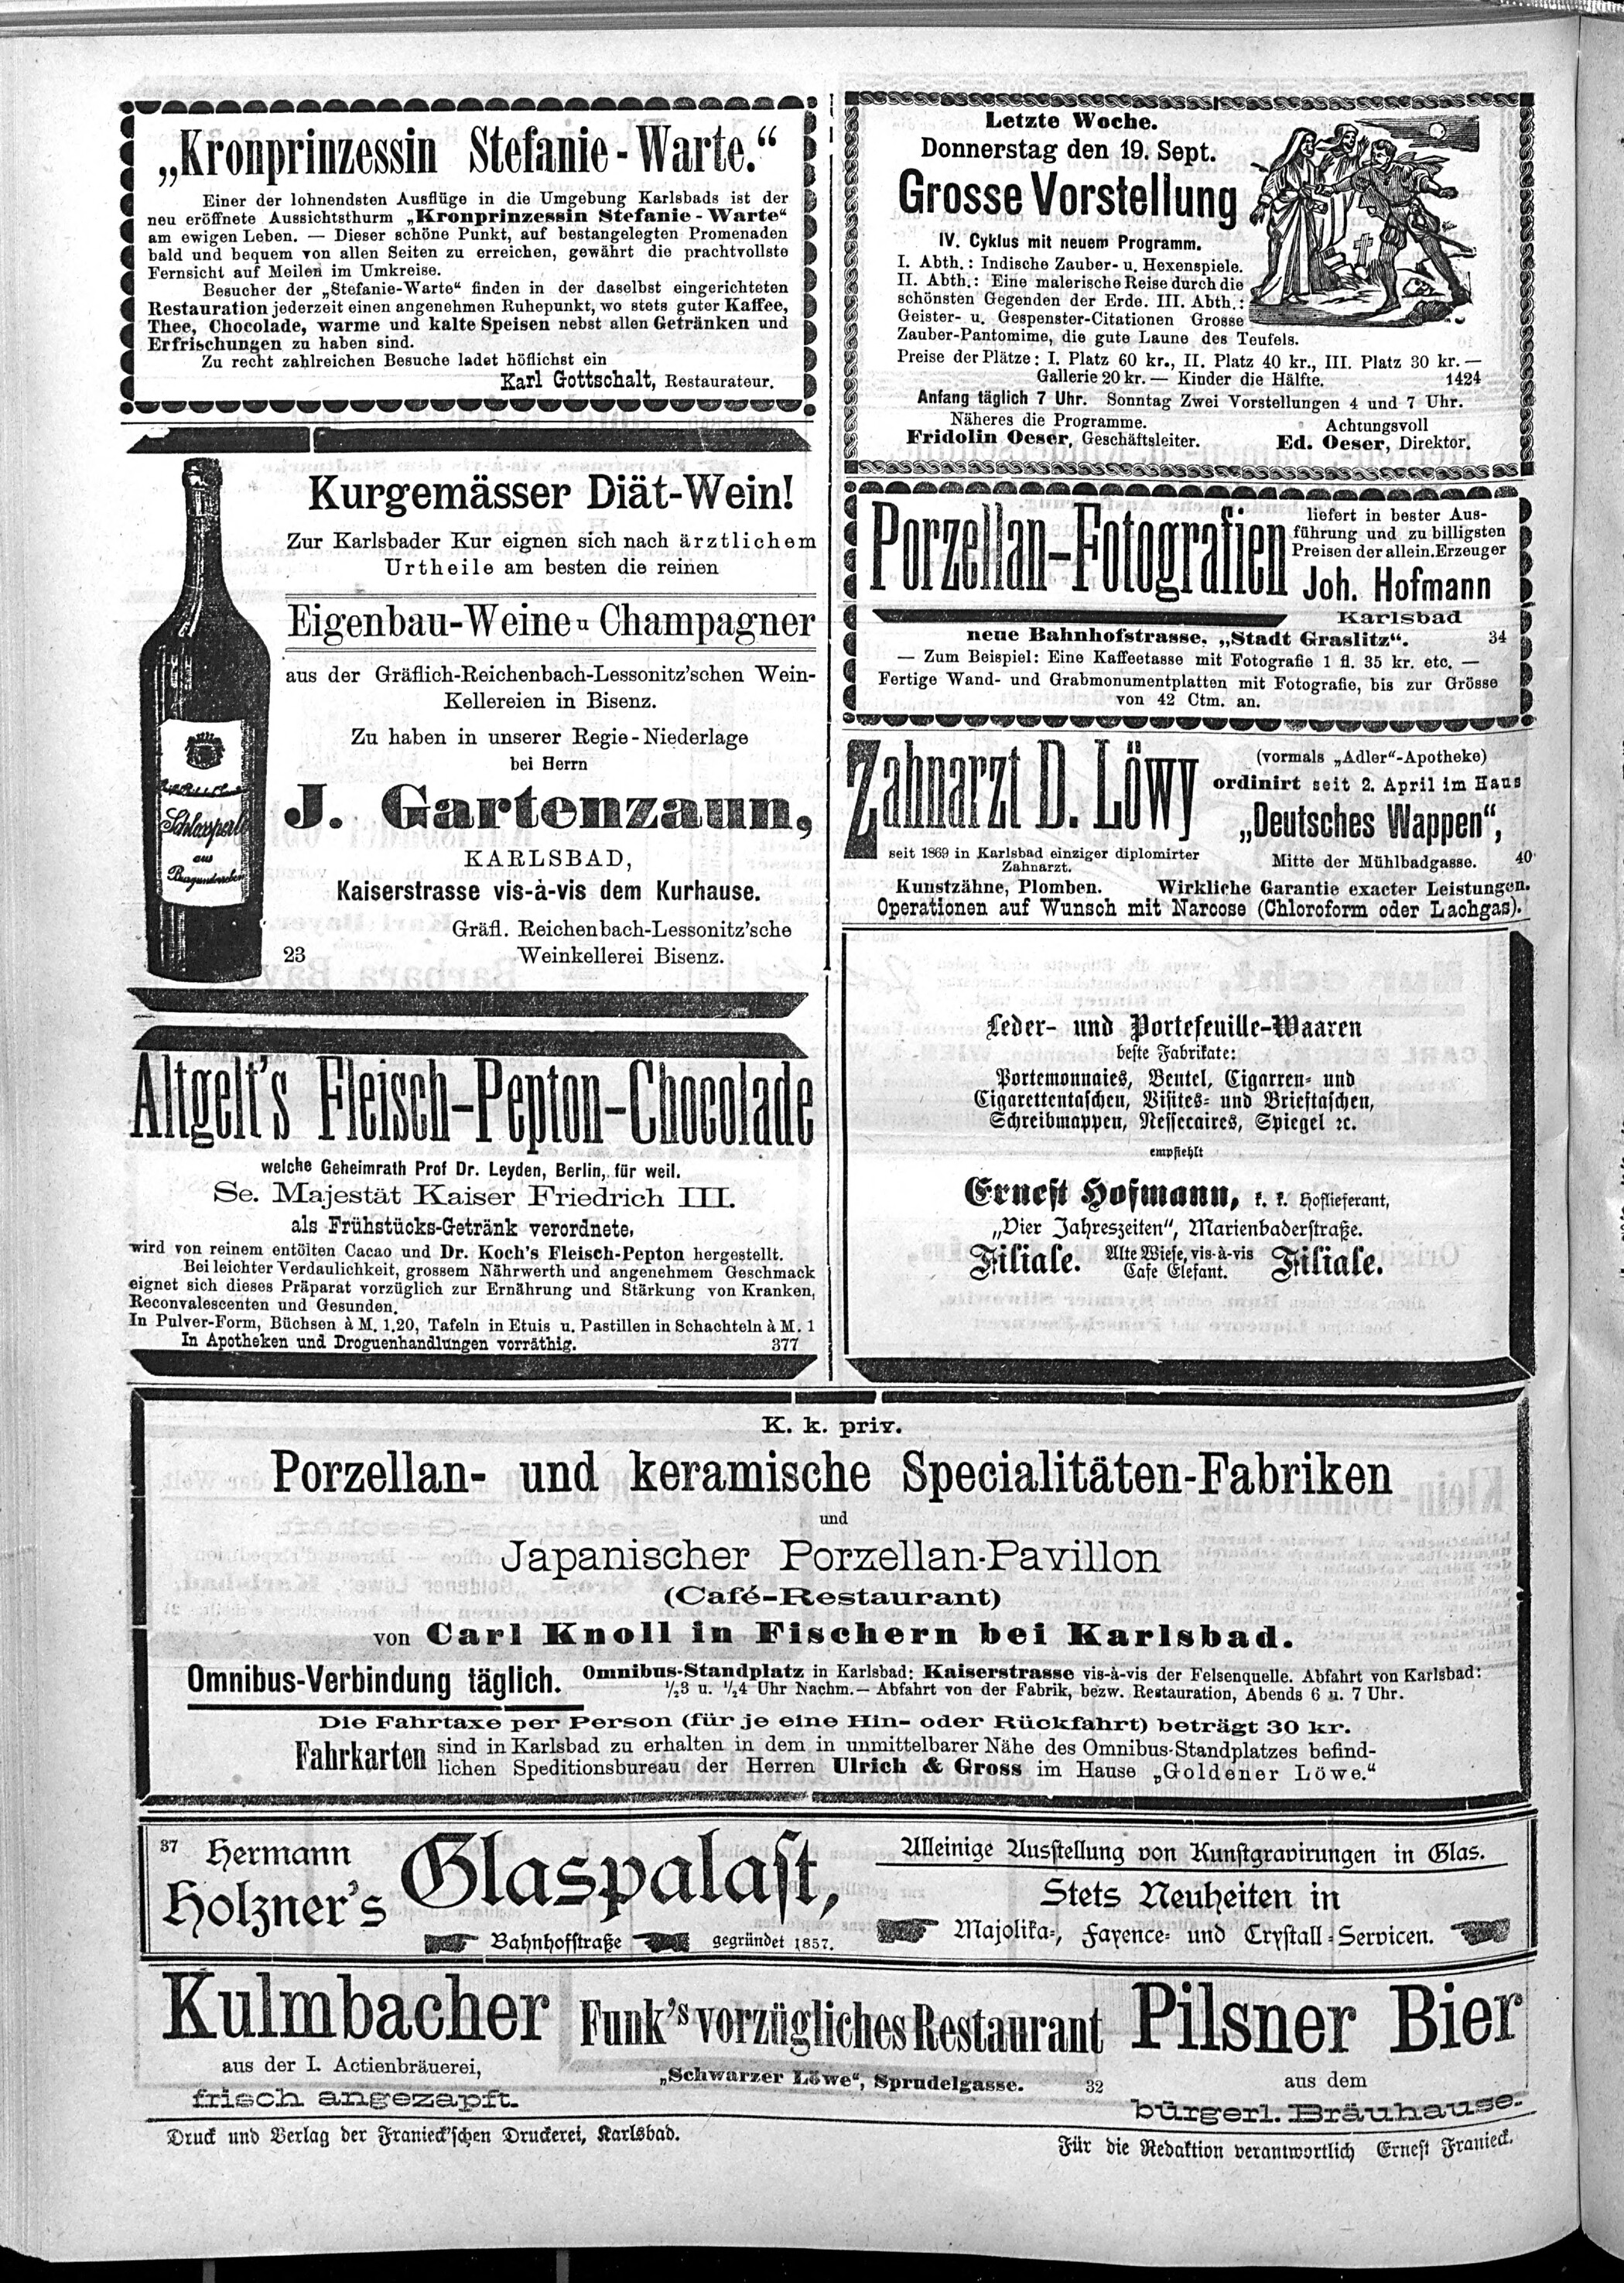 8. karlsbader-badeblatt-1889-09-19-n121_3580